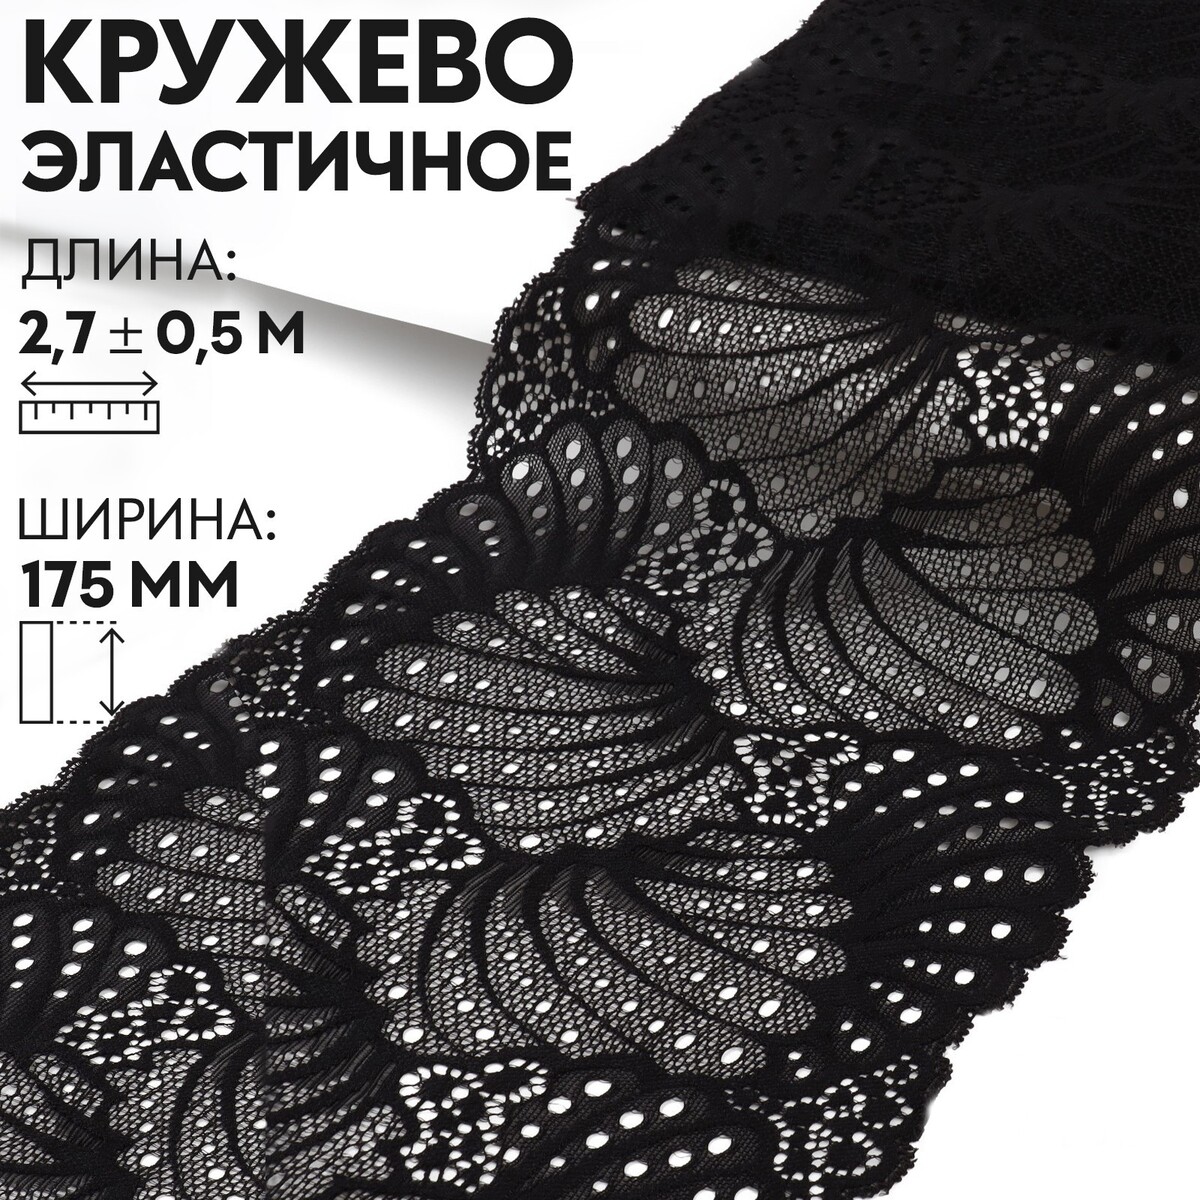 Кружевная эластичная ткань, 175 мм × 2,7 ± 0,5 м, цвет черный